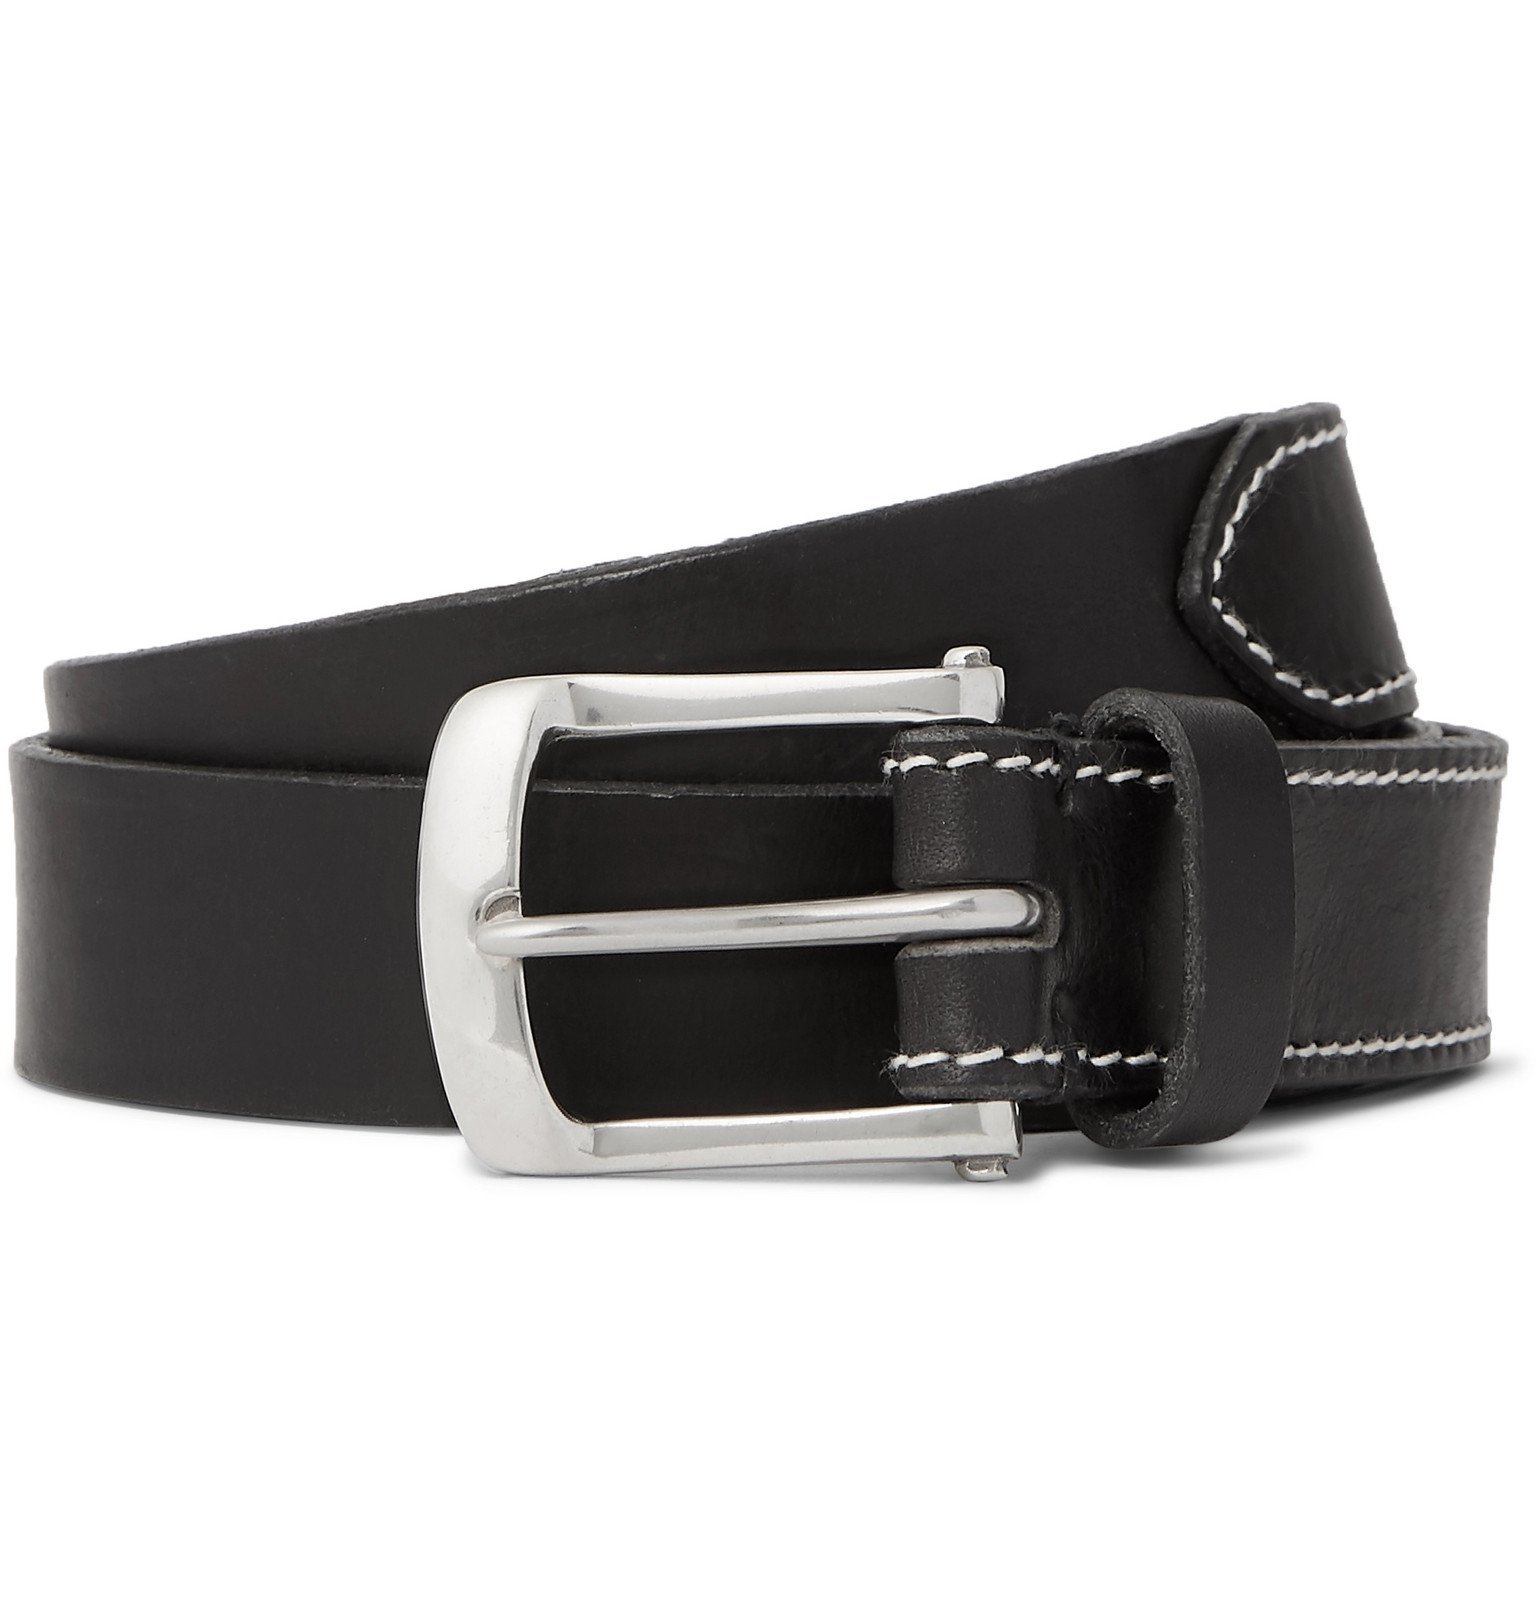 Oliver Spencer - 3cm Black Leather Belt - Black